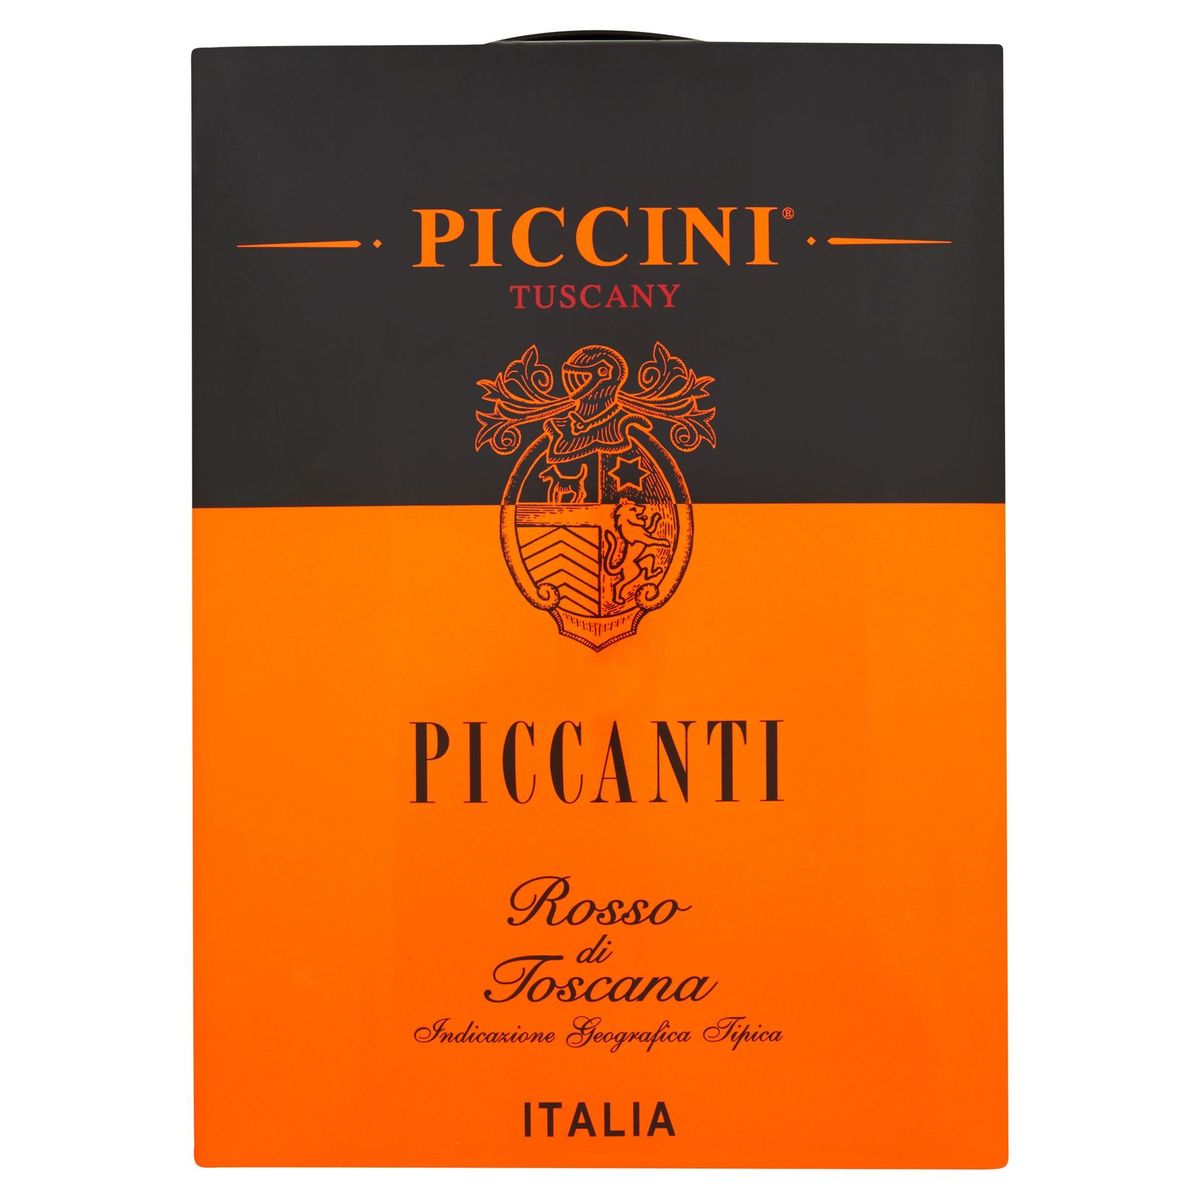 Piccini Tuscany Piccanti rosso di toscana 3000 ml